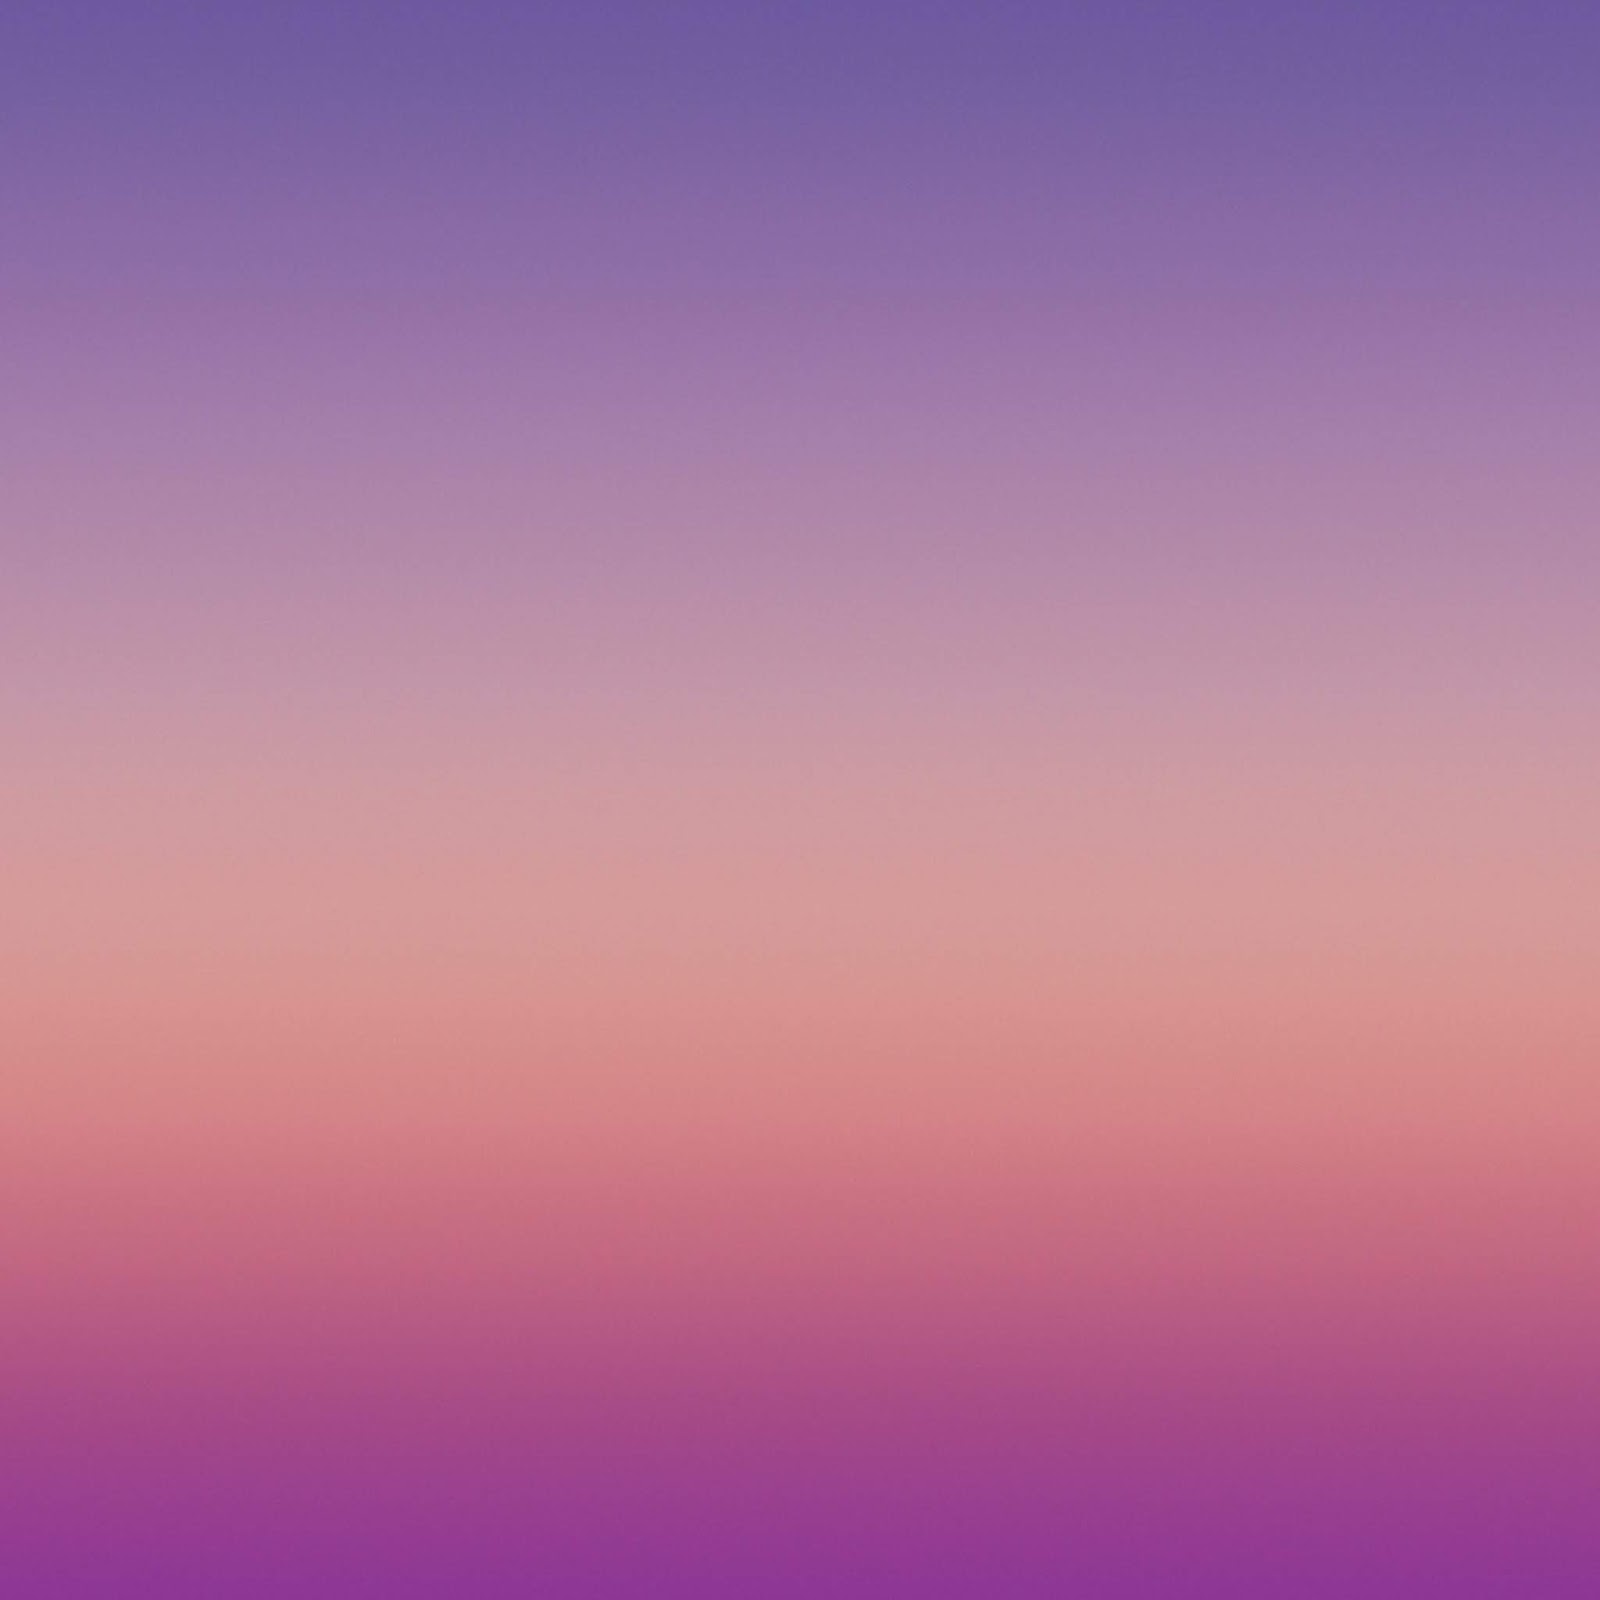 galaxy note 3 fond d'écran hd 1080p,ciel,violet,bleu,violet,rose